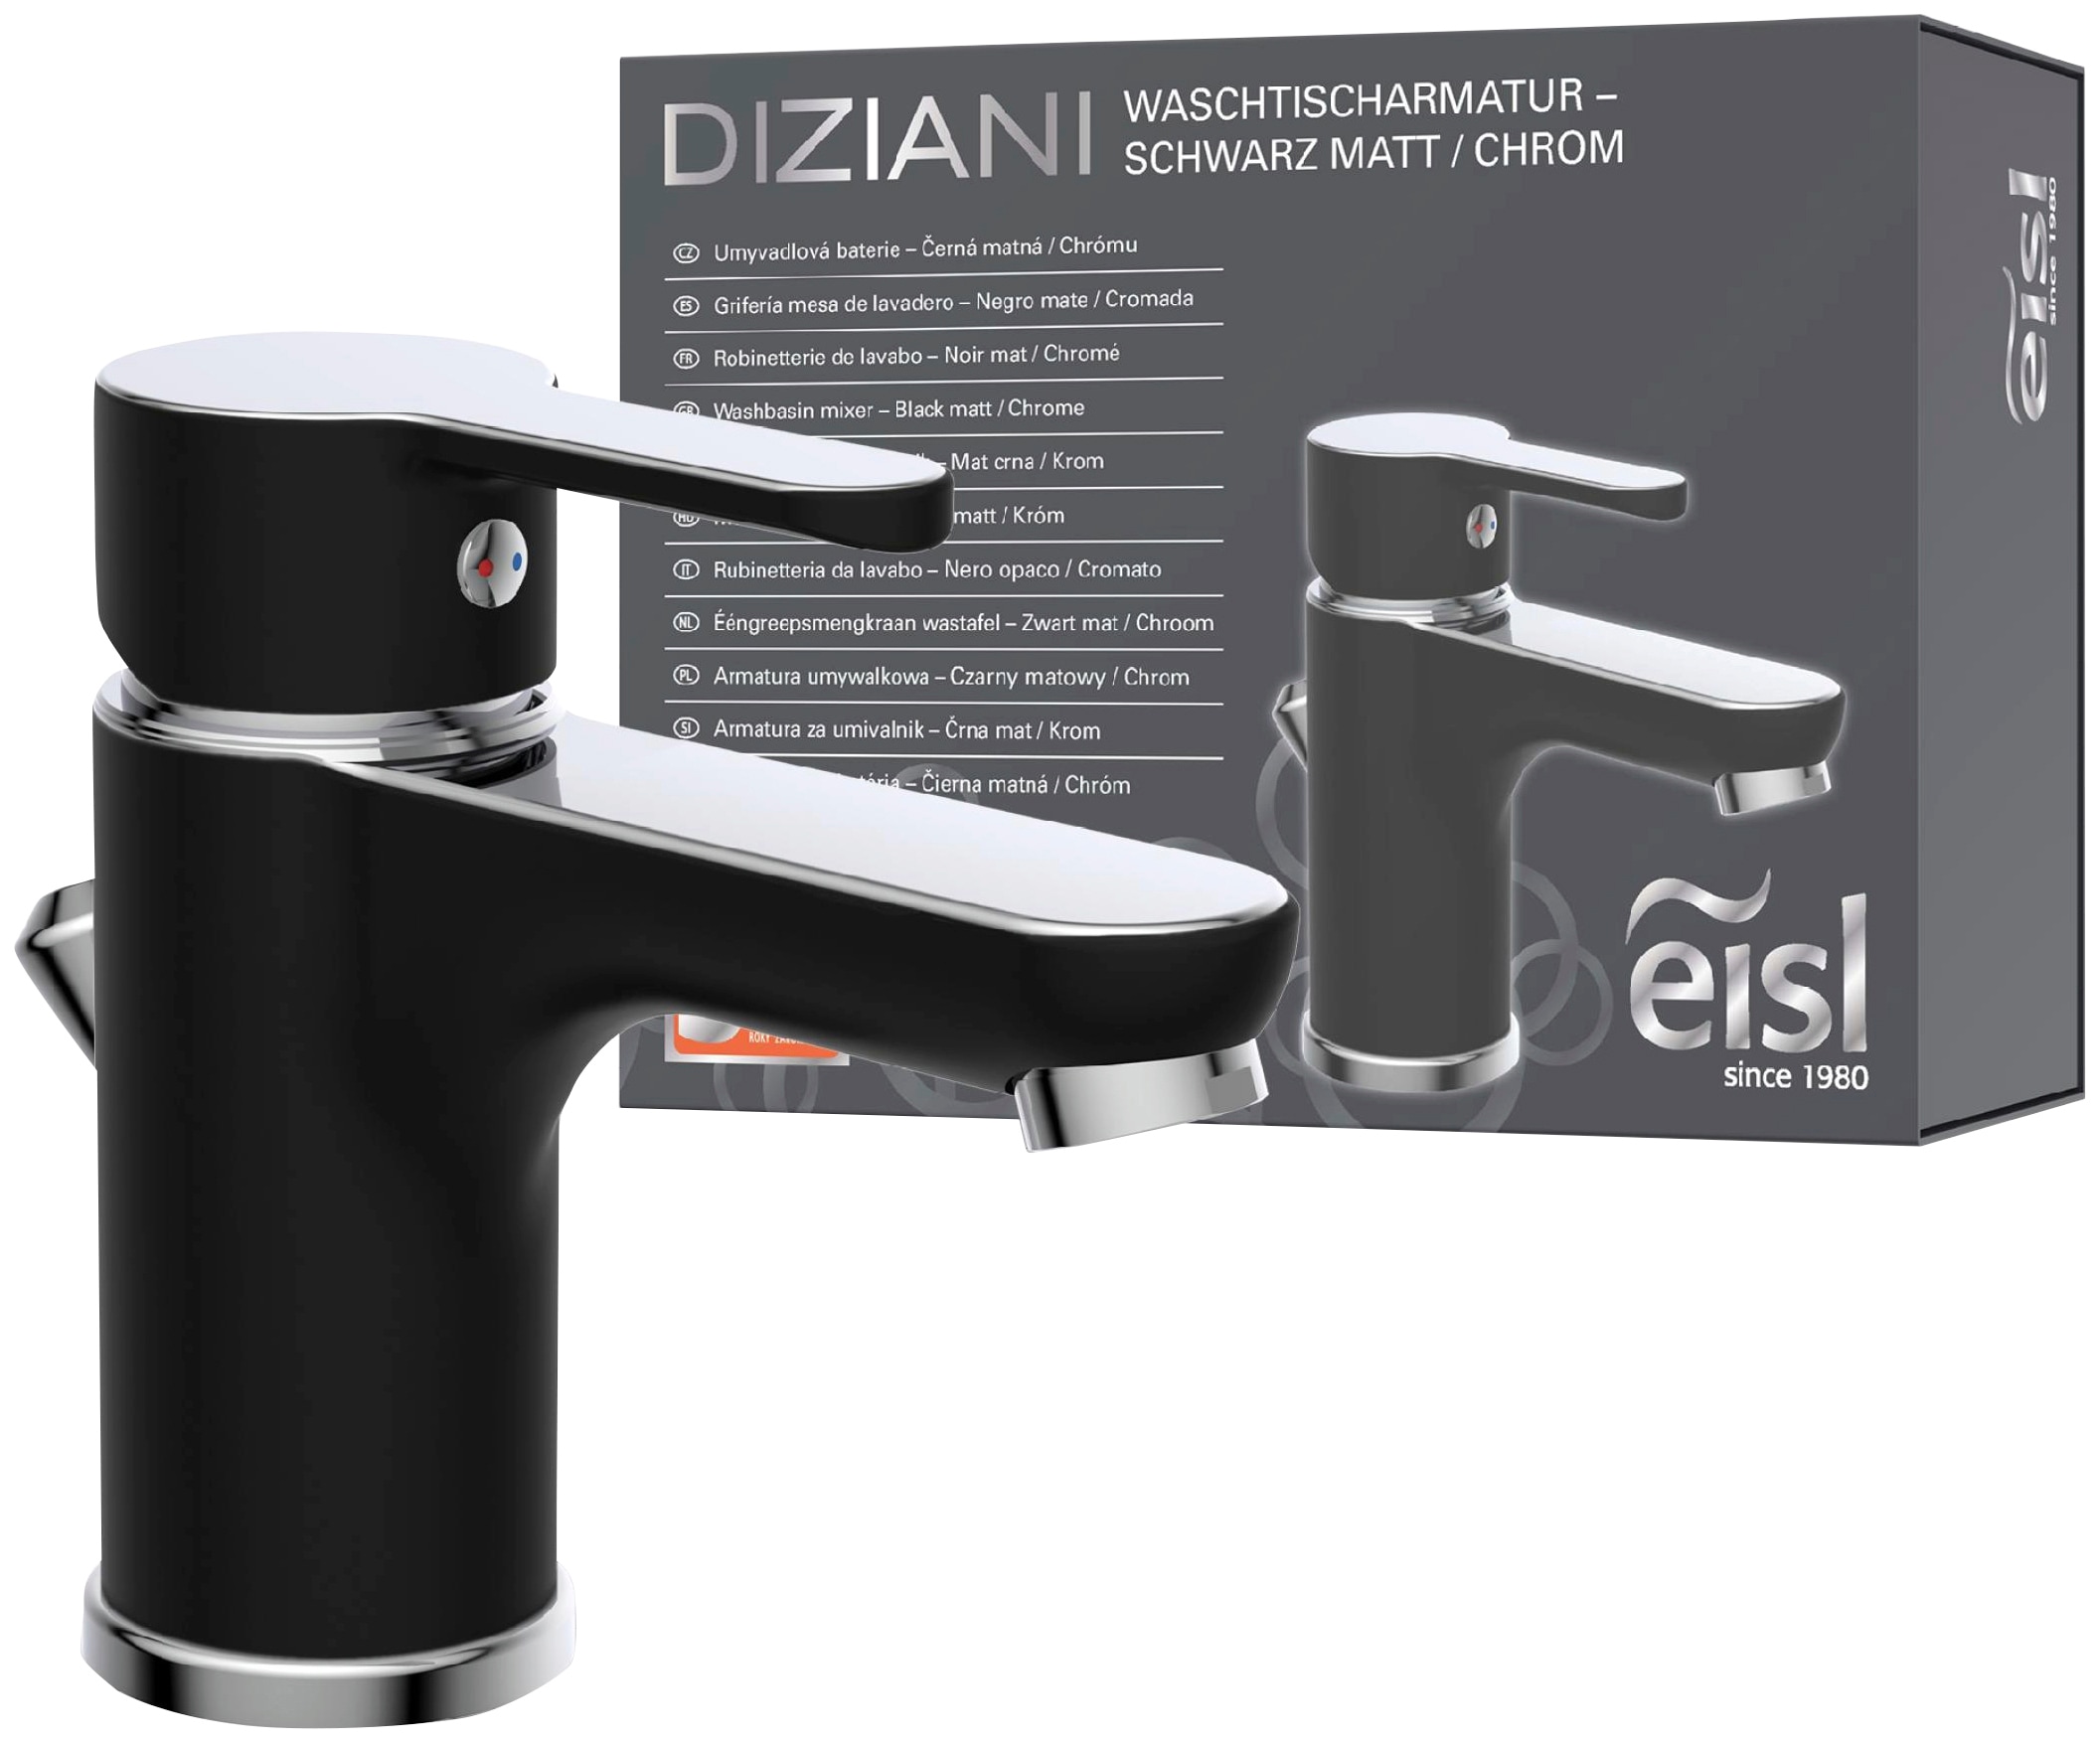 Eisl Waschtischarmatur »Diziani«, mit Zugstange, Wasserhahn mit Ablaufgarnitur, Mischbatterie